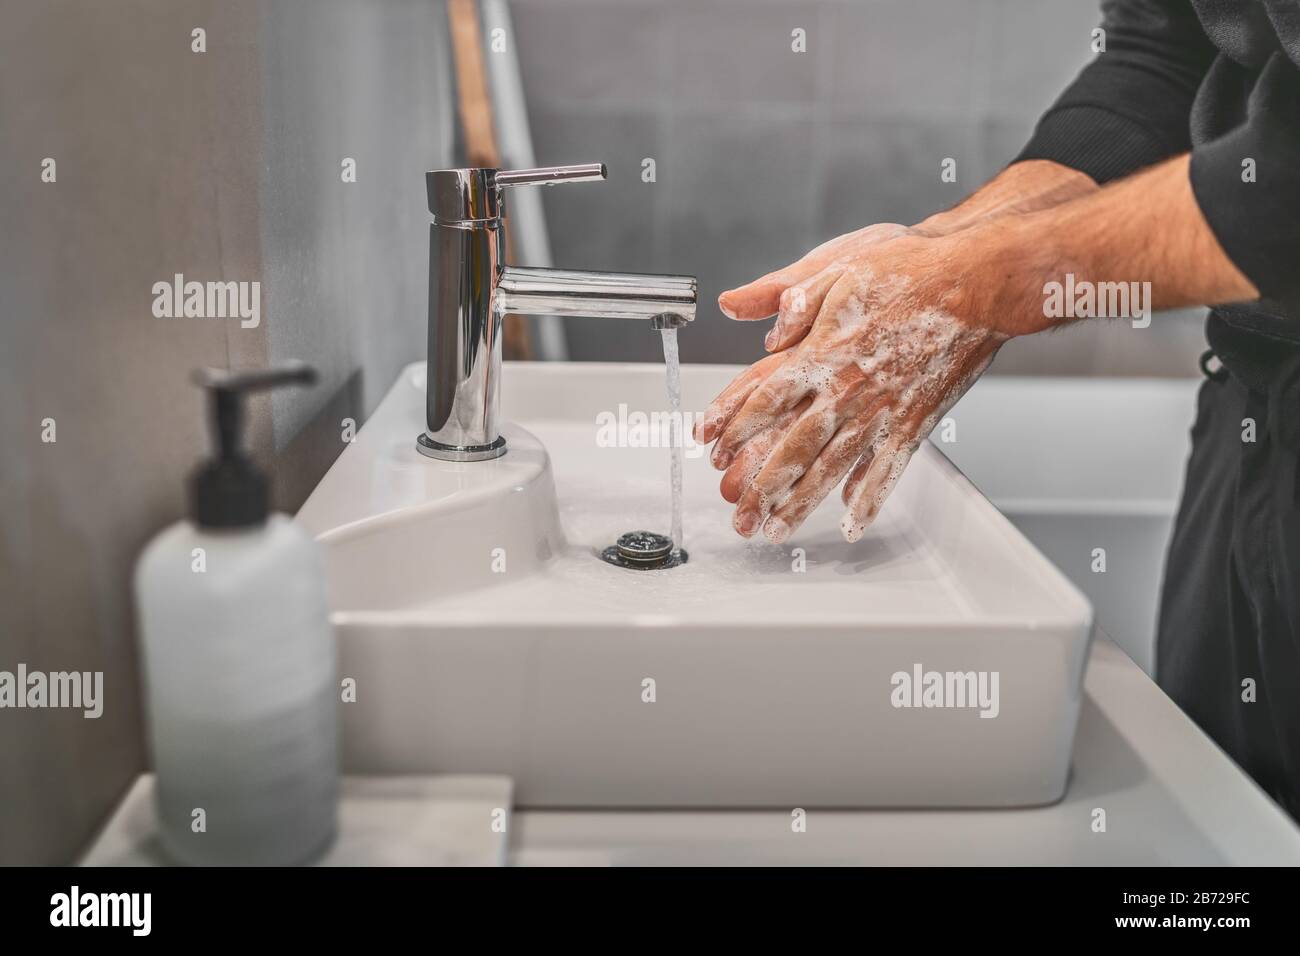 Waschen der Hände mit Seife und heißem Wasser im Badezimmer Spüle man reinigende Handhygiene für die Vorbeugung von Coronavirus-Ausbrüchen. Schutz vor Corona-Virus-Pandemie durch häufiges Händewaschen. Stockfoto